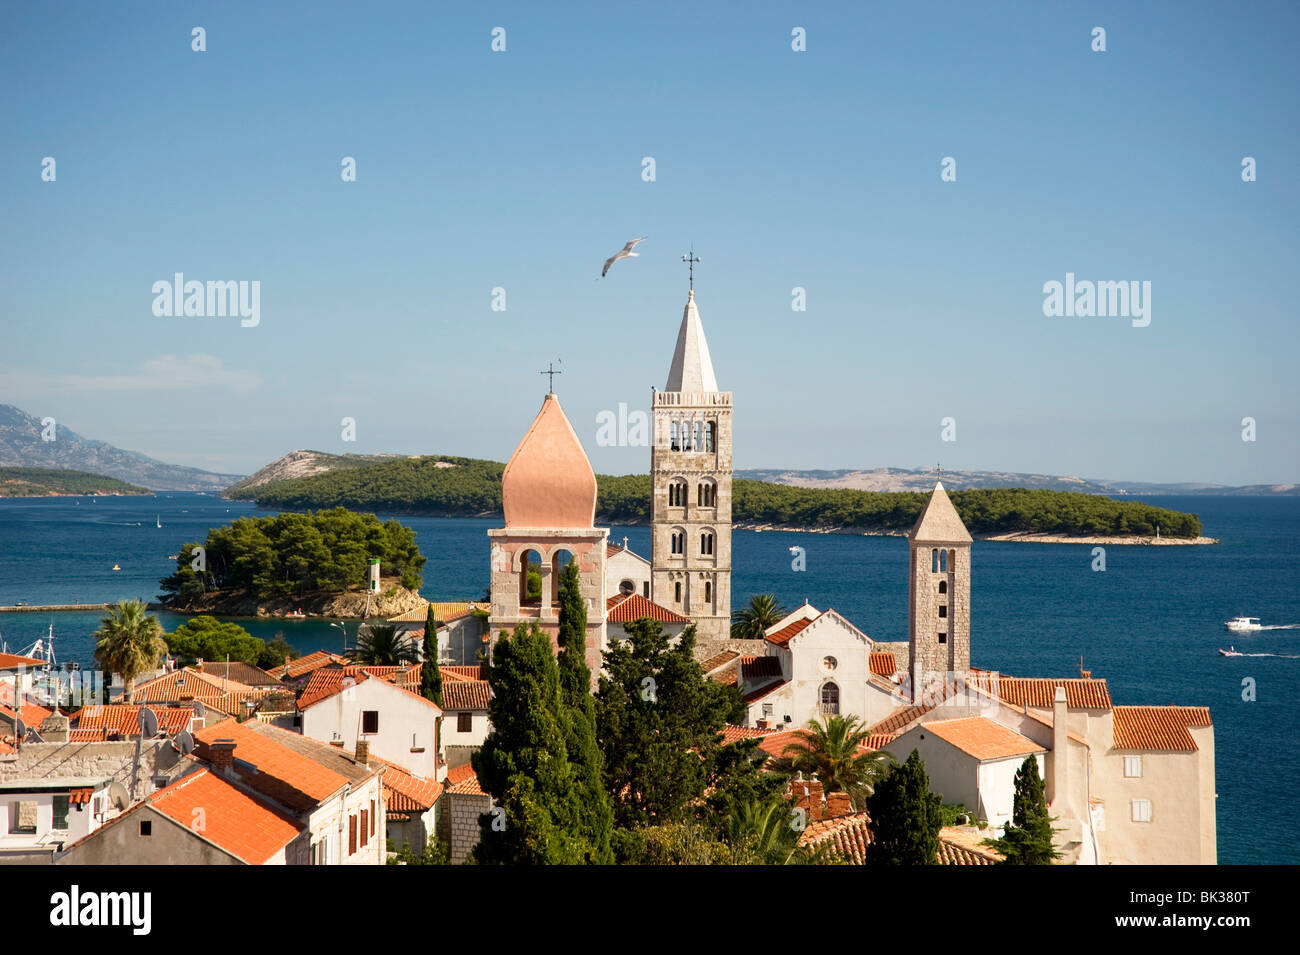 Les clochers médiévaux et toits en terre cuite en Rab Ville, île de Rab, région de Kvarner, Croatie, Europe Banque D'Images